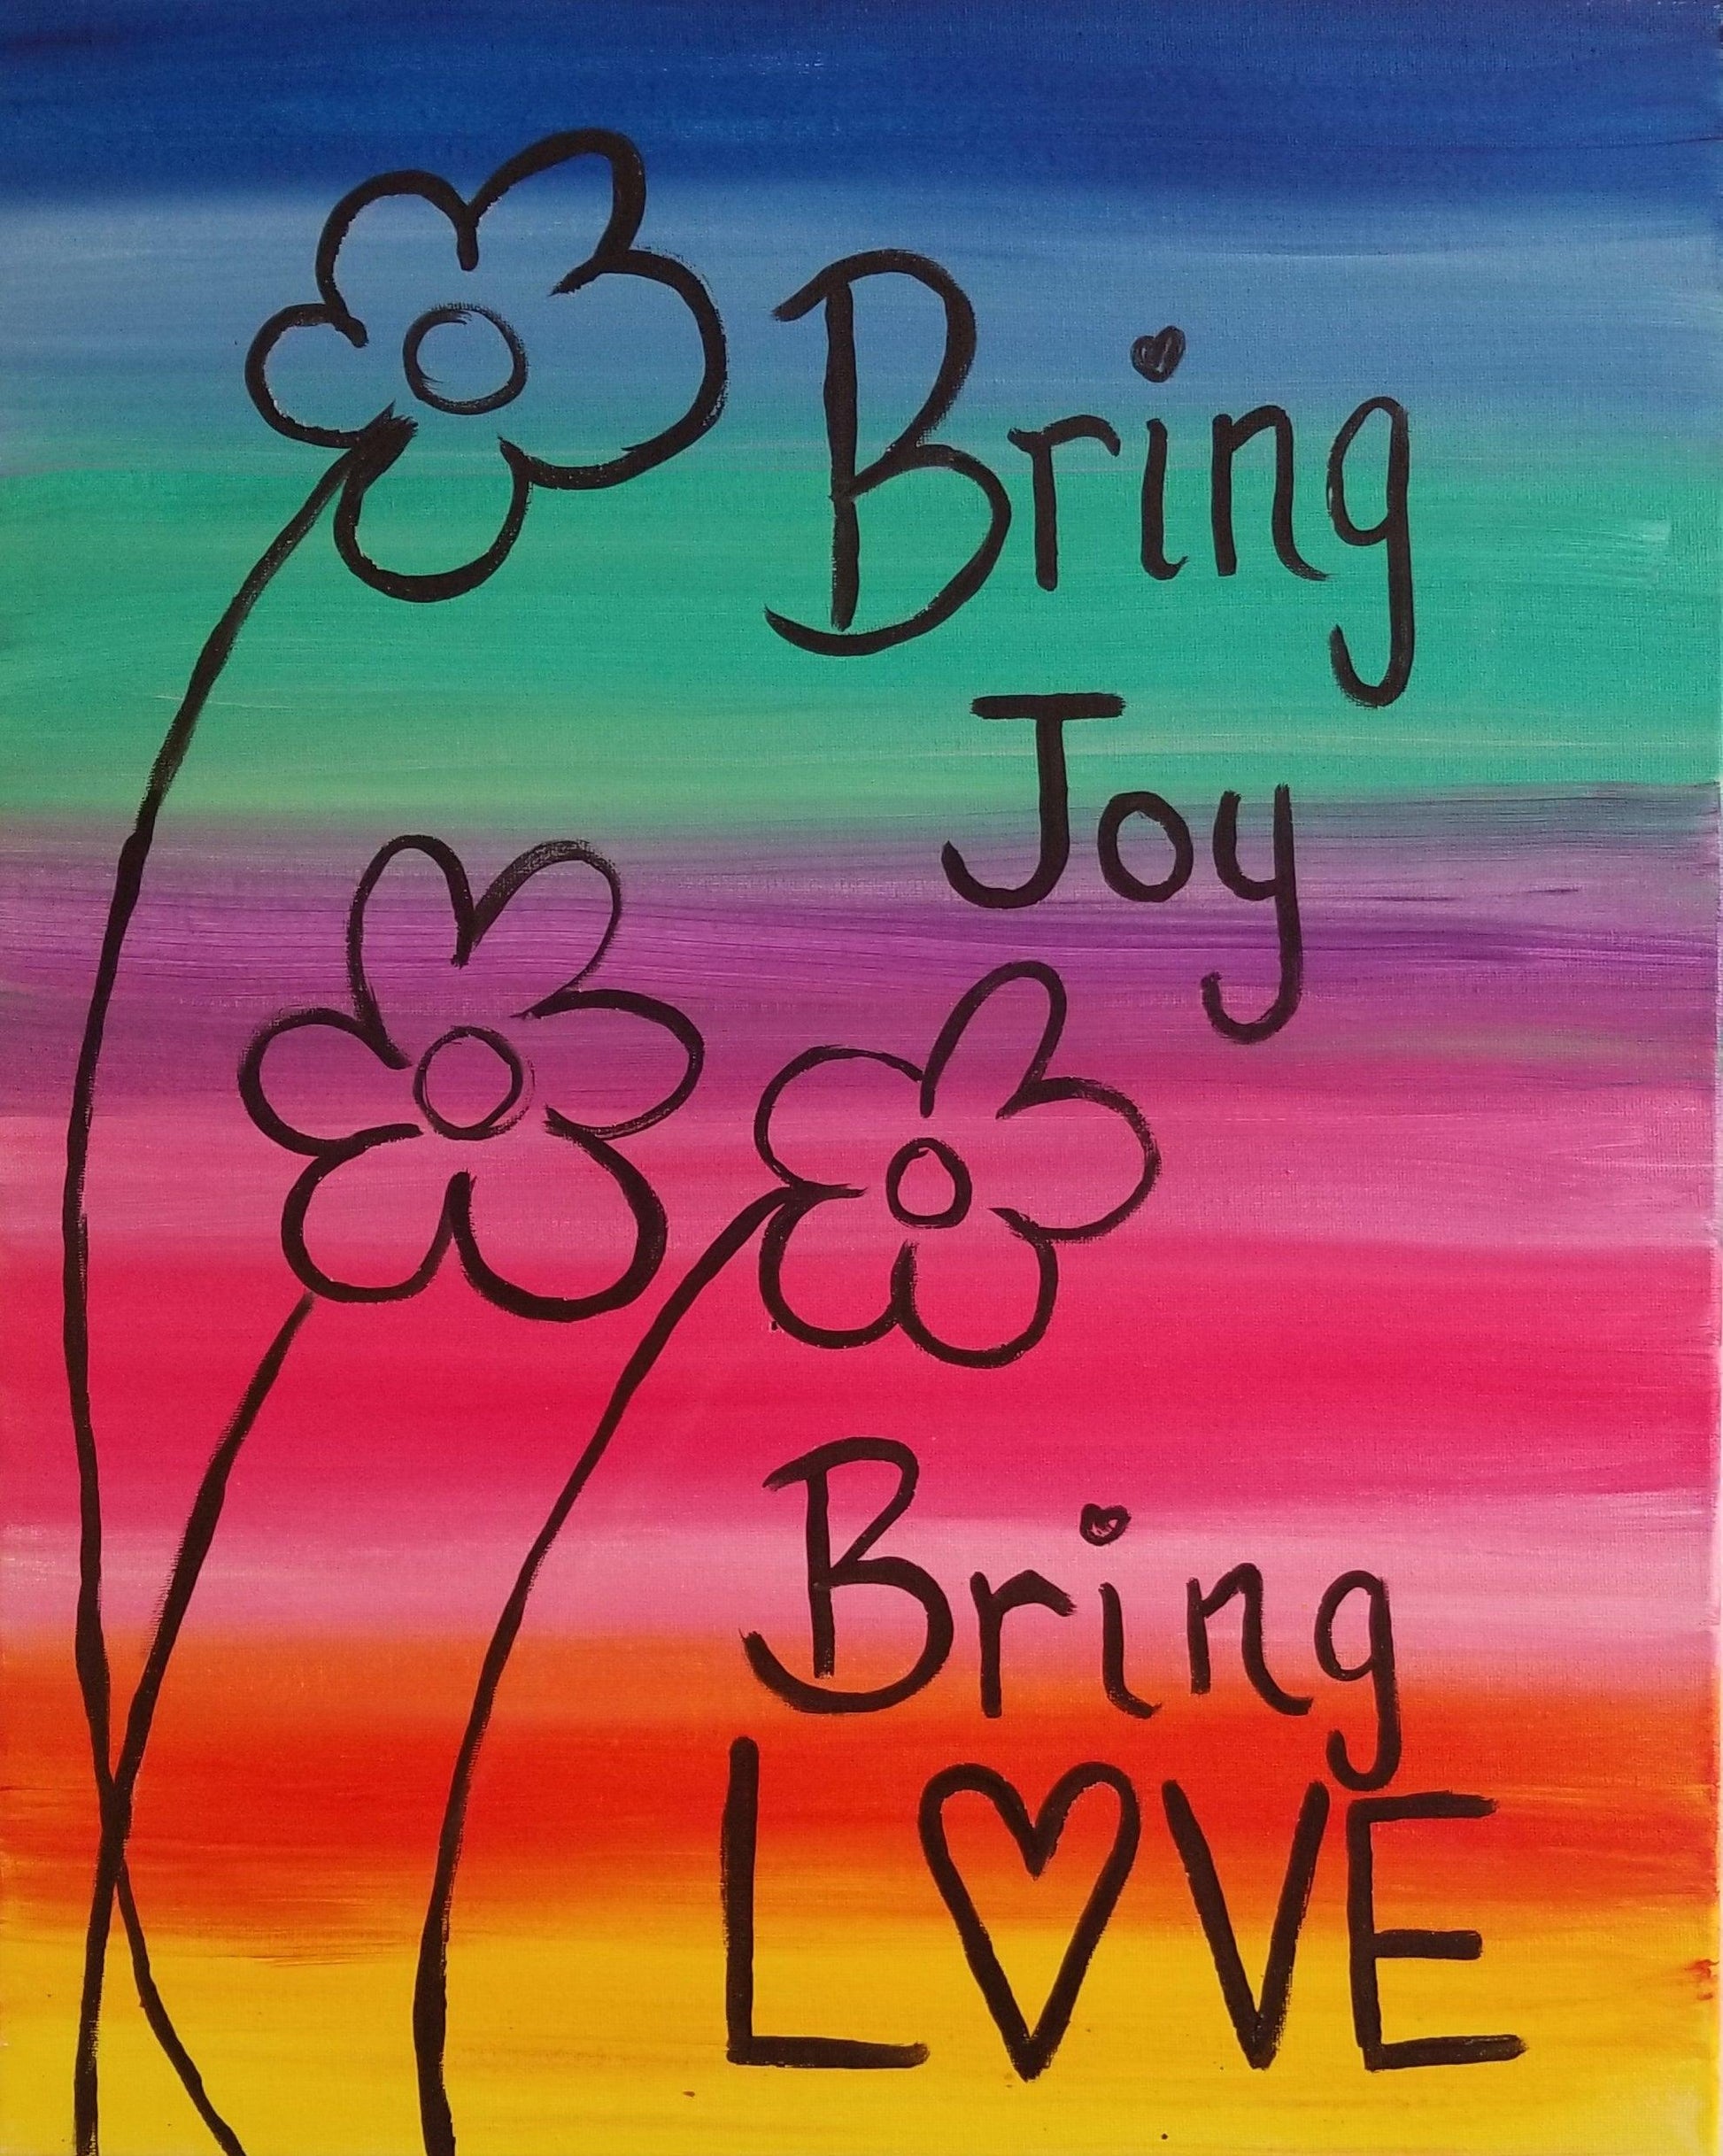 Bring Love, Bring Joy - Brush Tips Art Studio